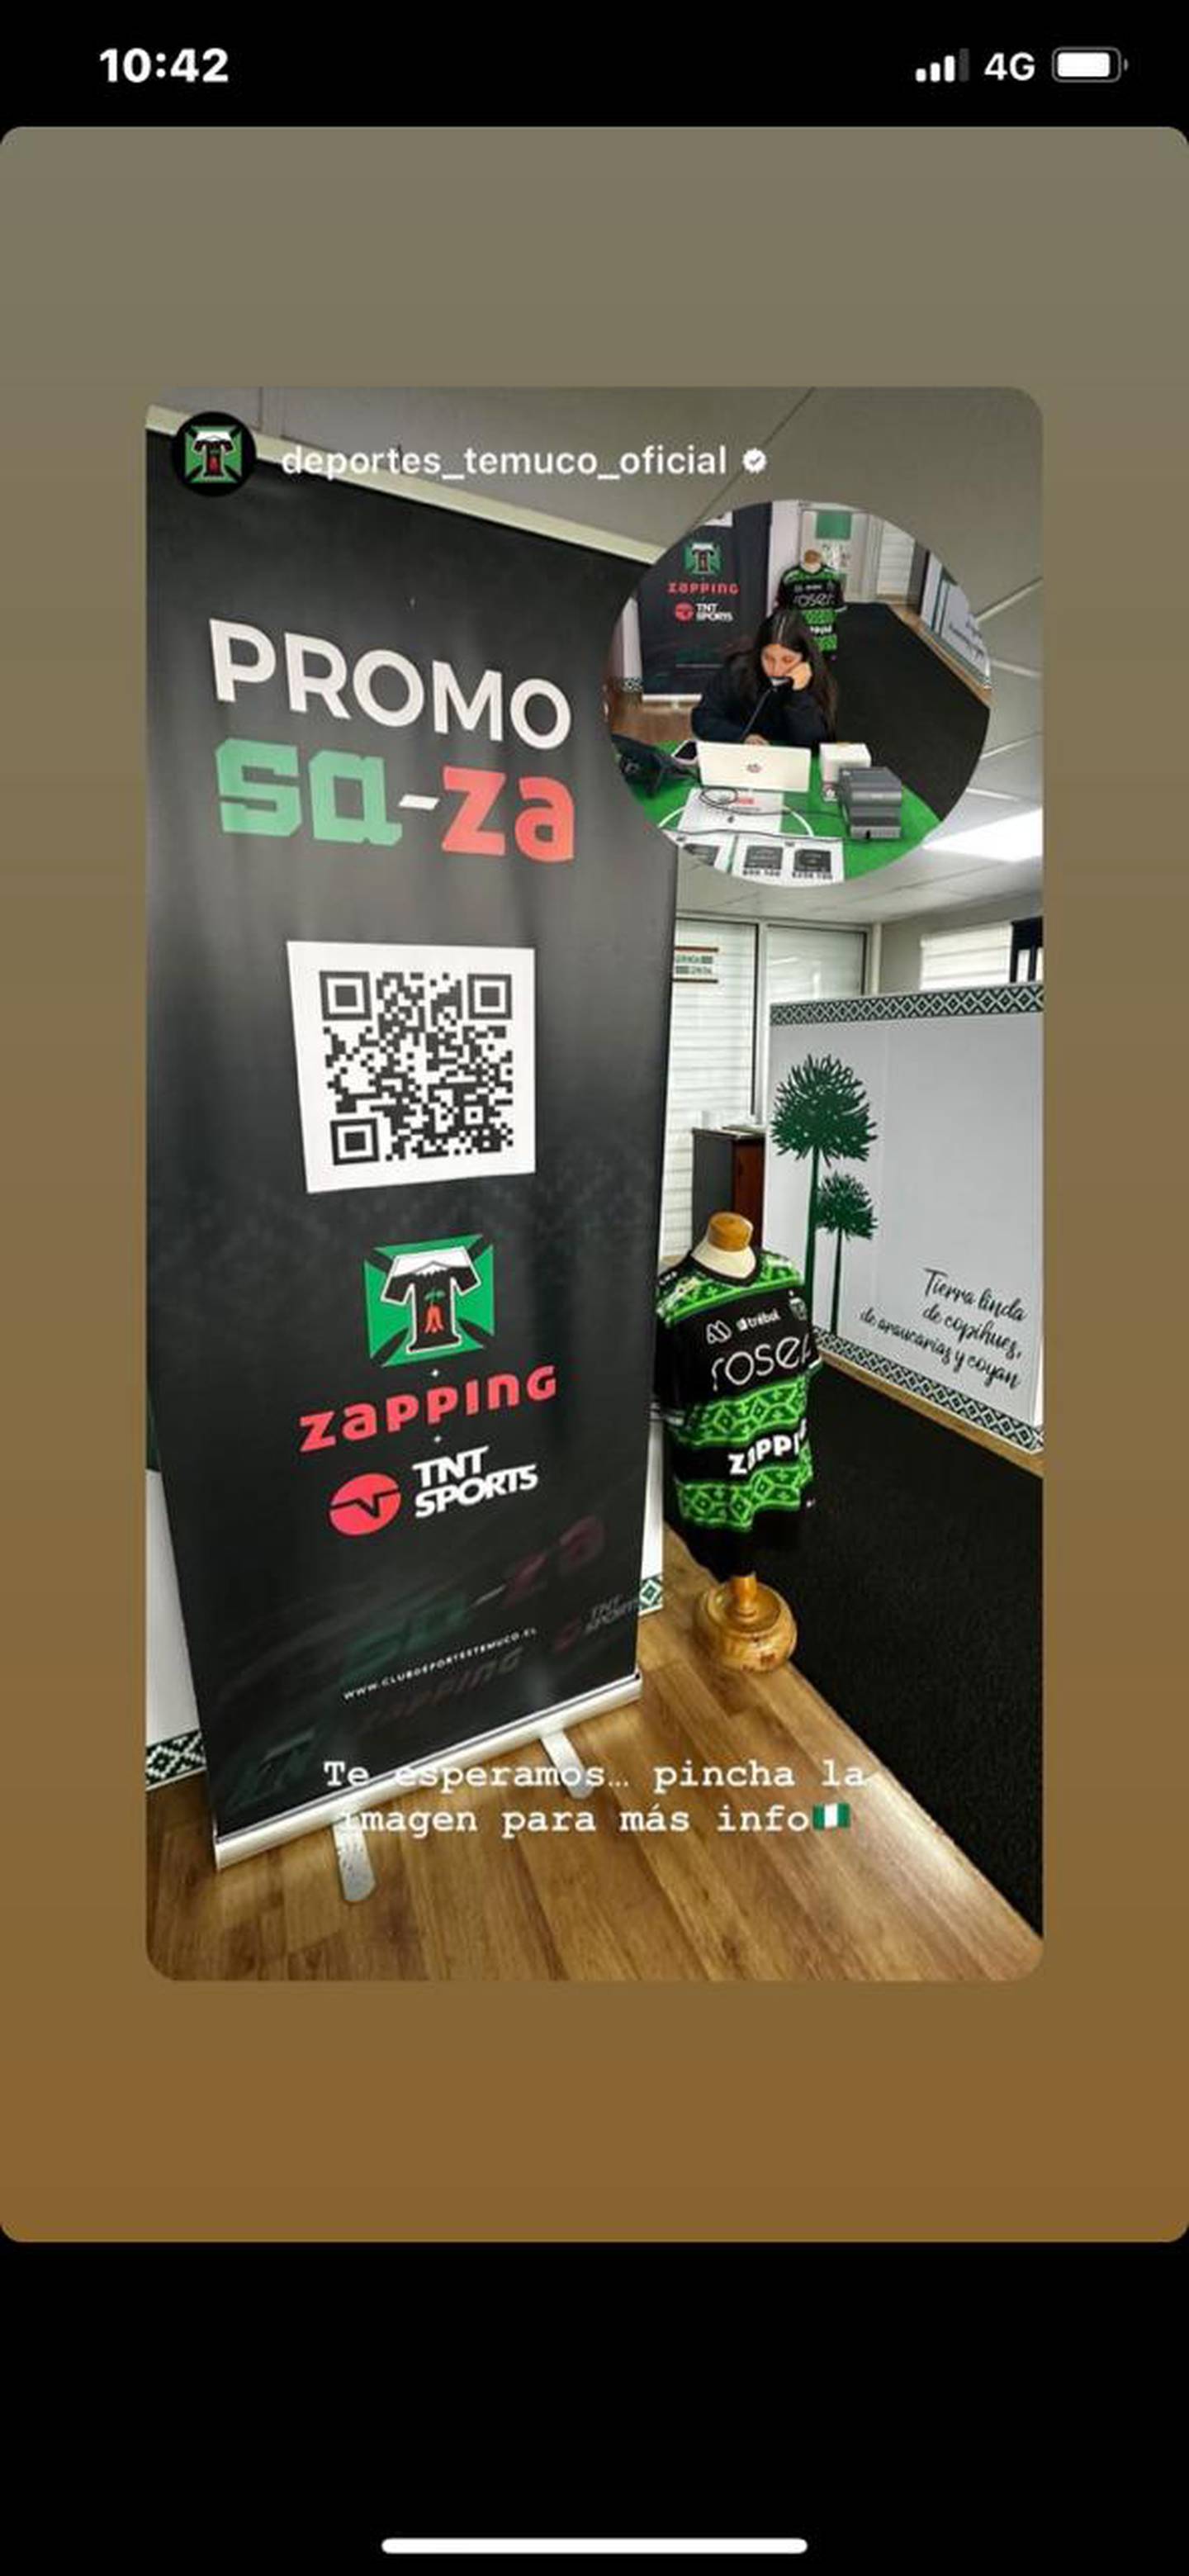 Cartel informativo de la promoción de deportes Temuco con la empresa Zapping.